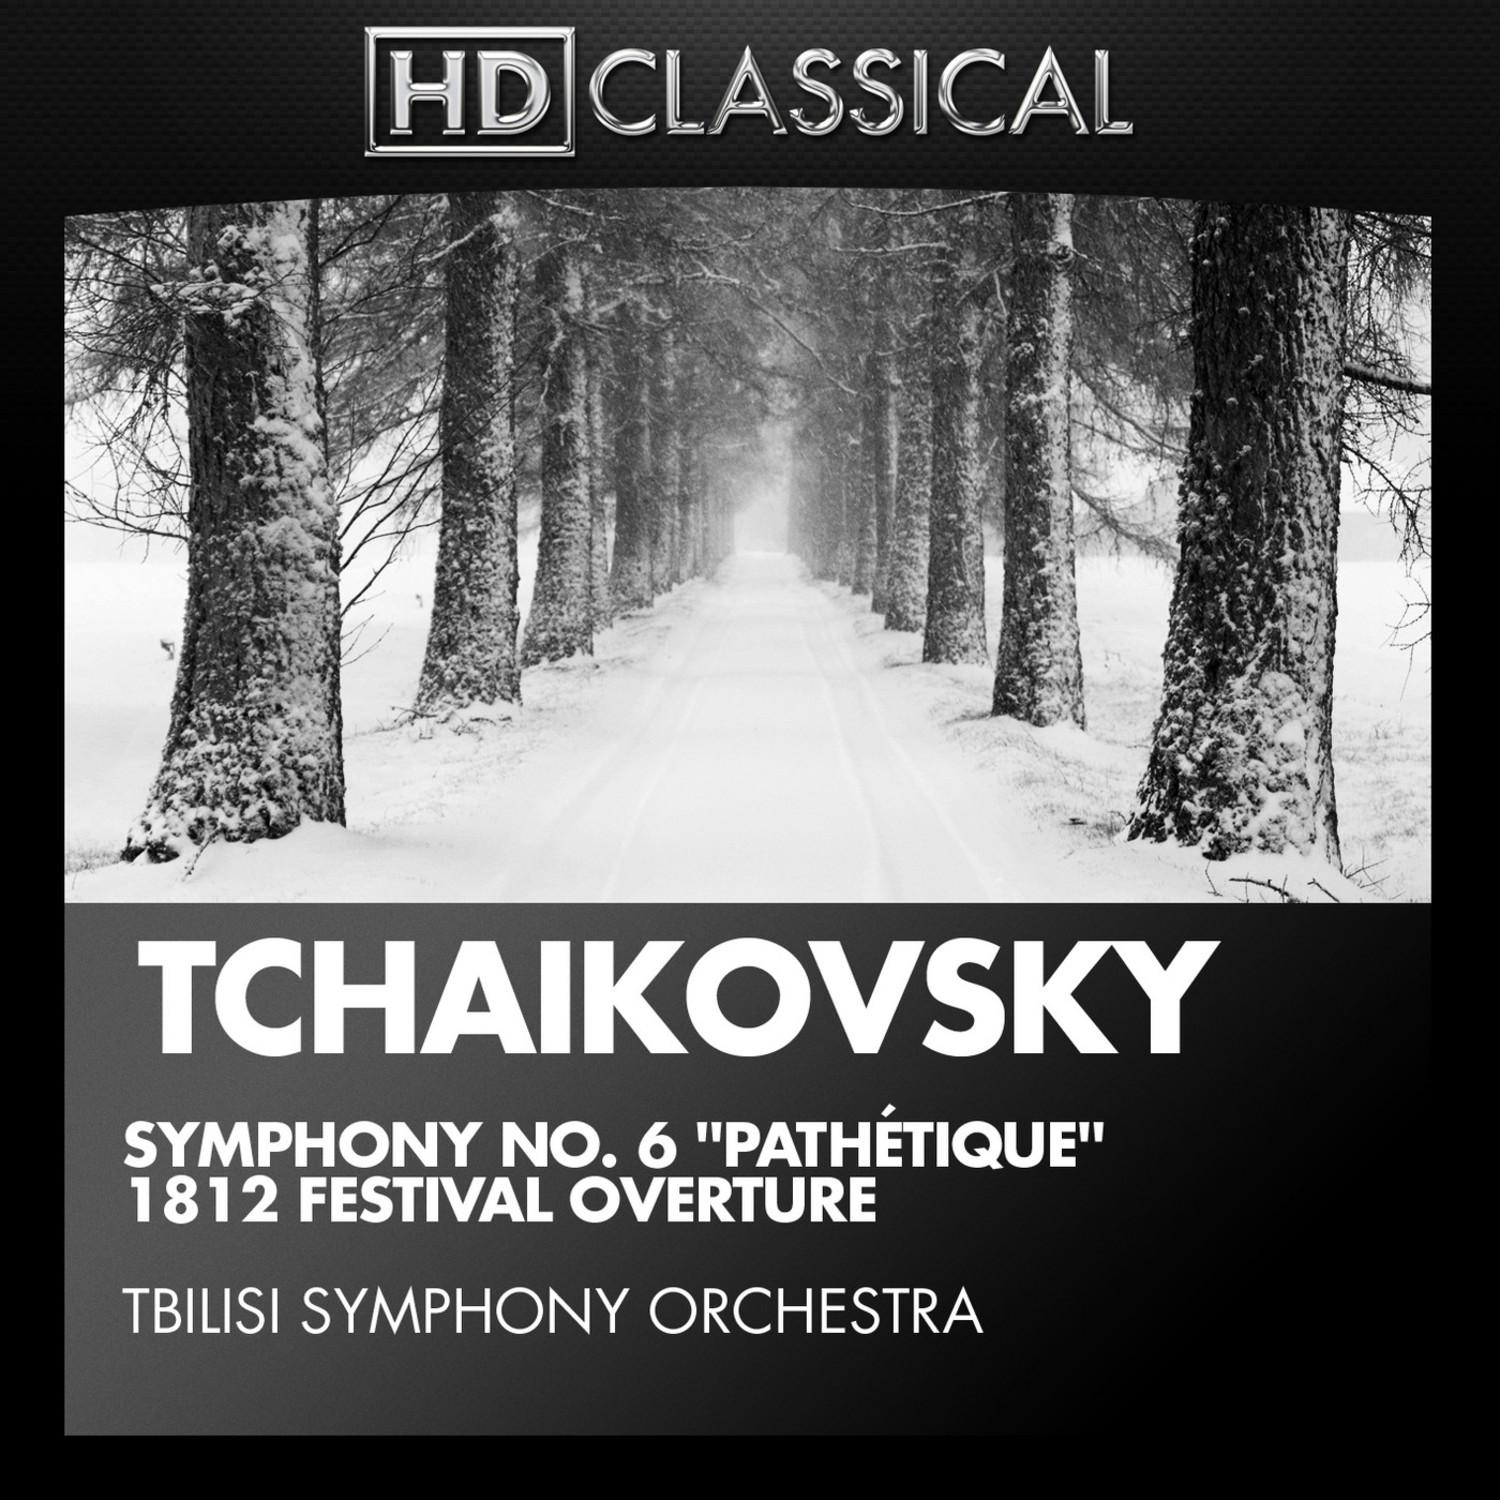 Tchaikovsky: Symphony No. 6 " Pathe tique" and 1812 Festival Overture